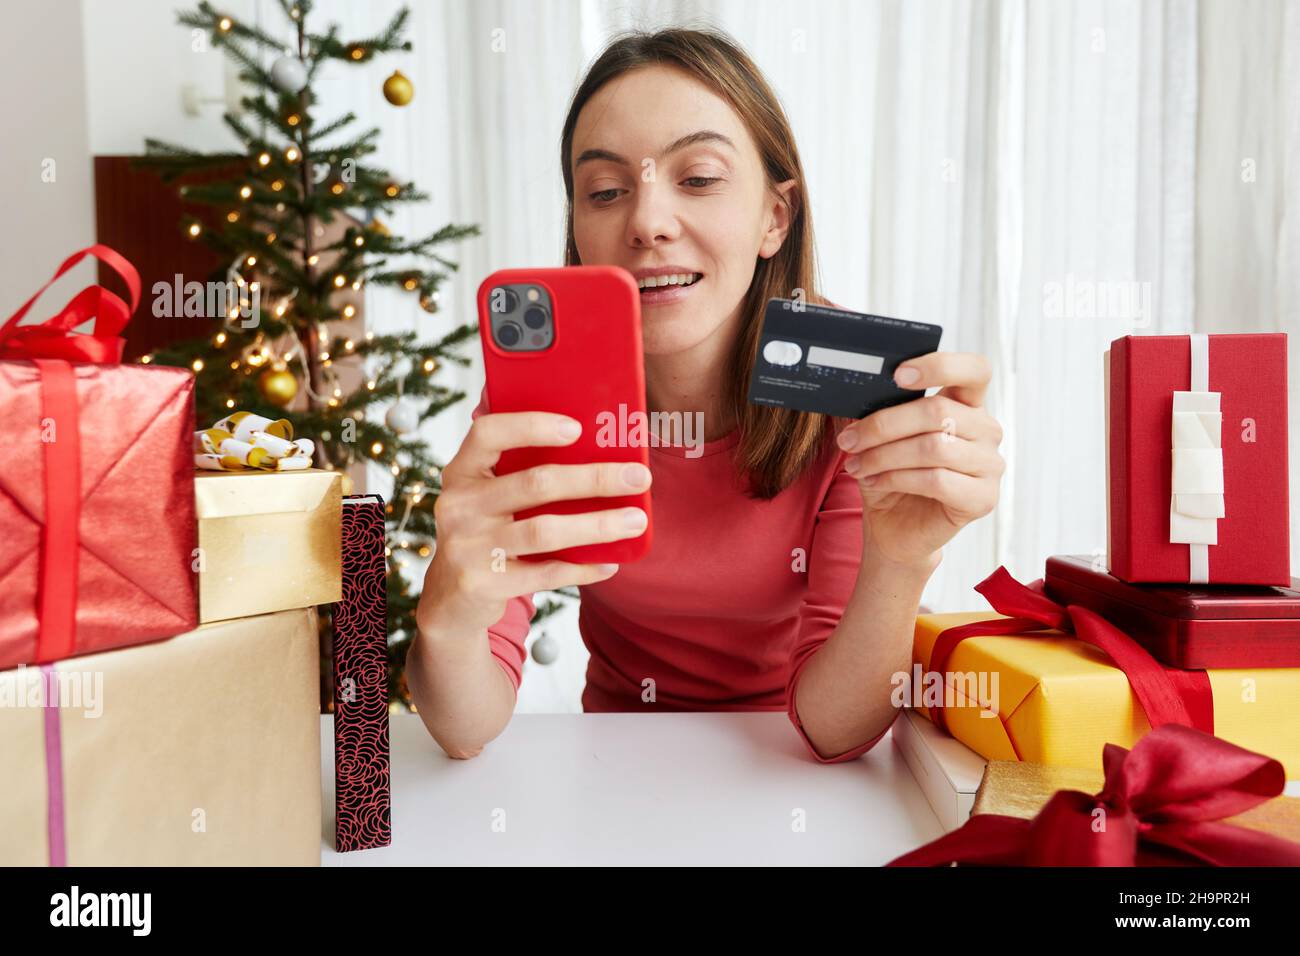 Une femme joyeuse avec carte en plastique shopping en ligne et faire des achats via smartphone tout en achetant des cadeaux de Noël avant les vacances Banque D'Images